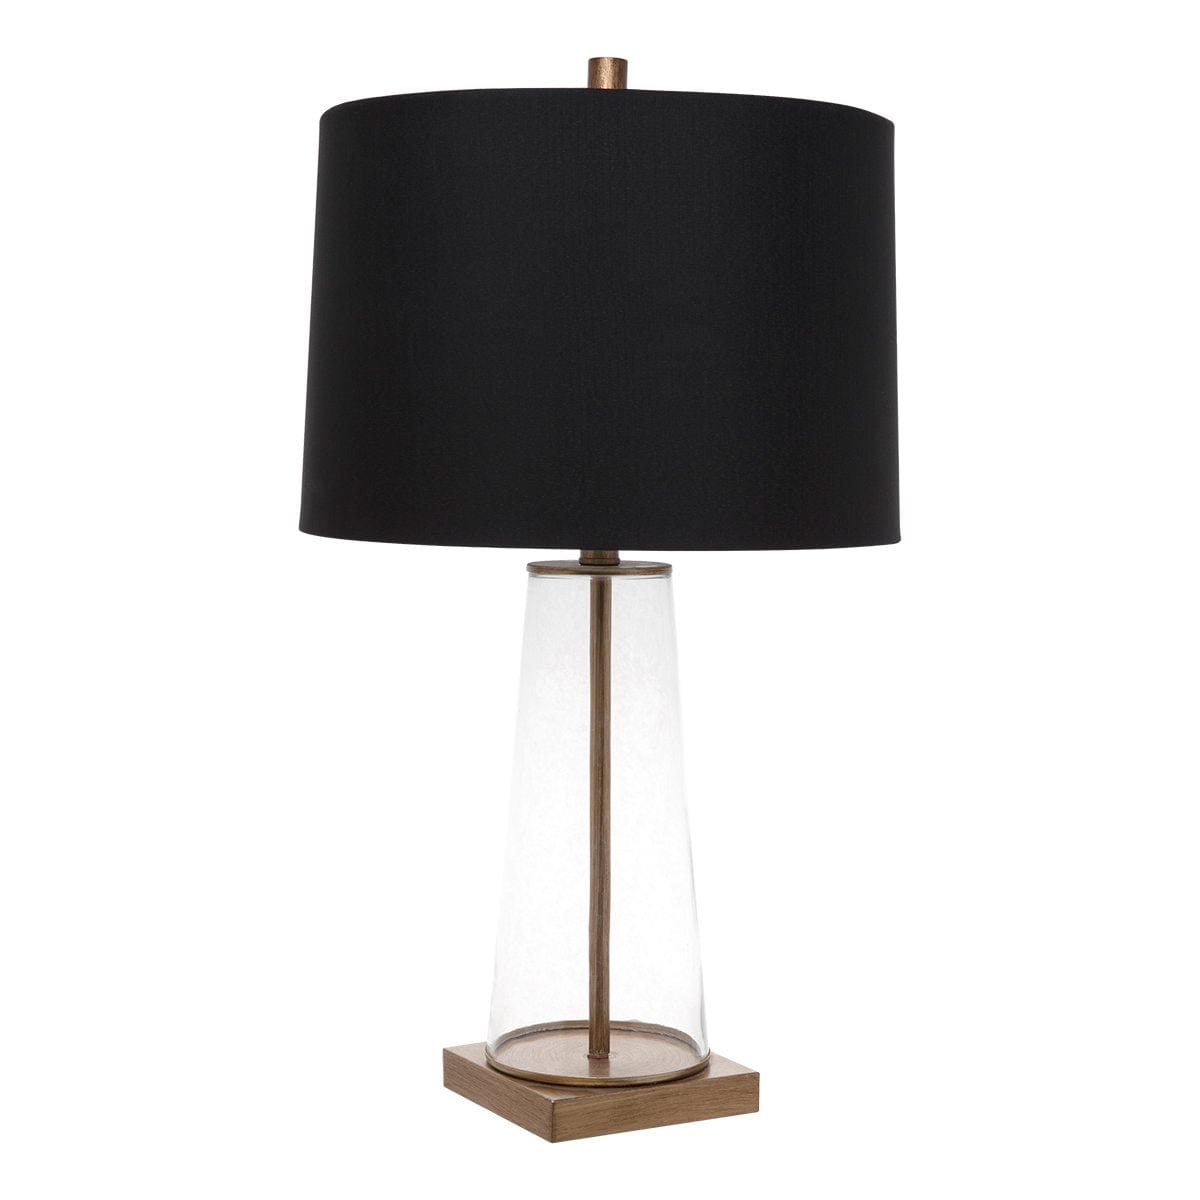 CAFE LIGHTING & LIVING Table Lamp Aspen Table Lamp - Black Shade 13324